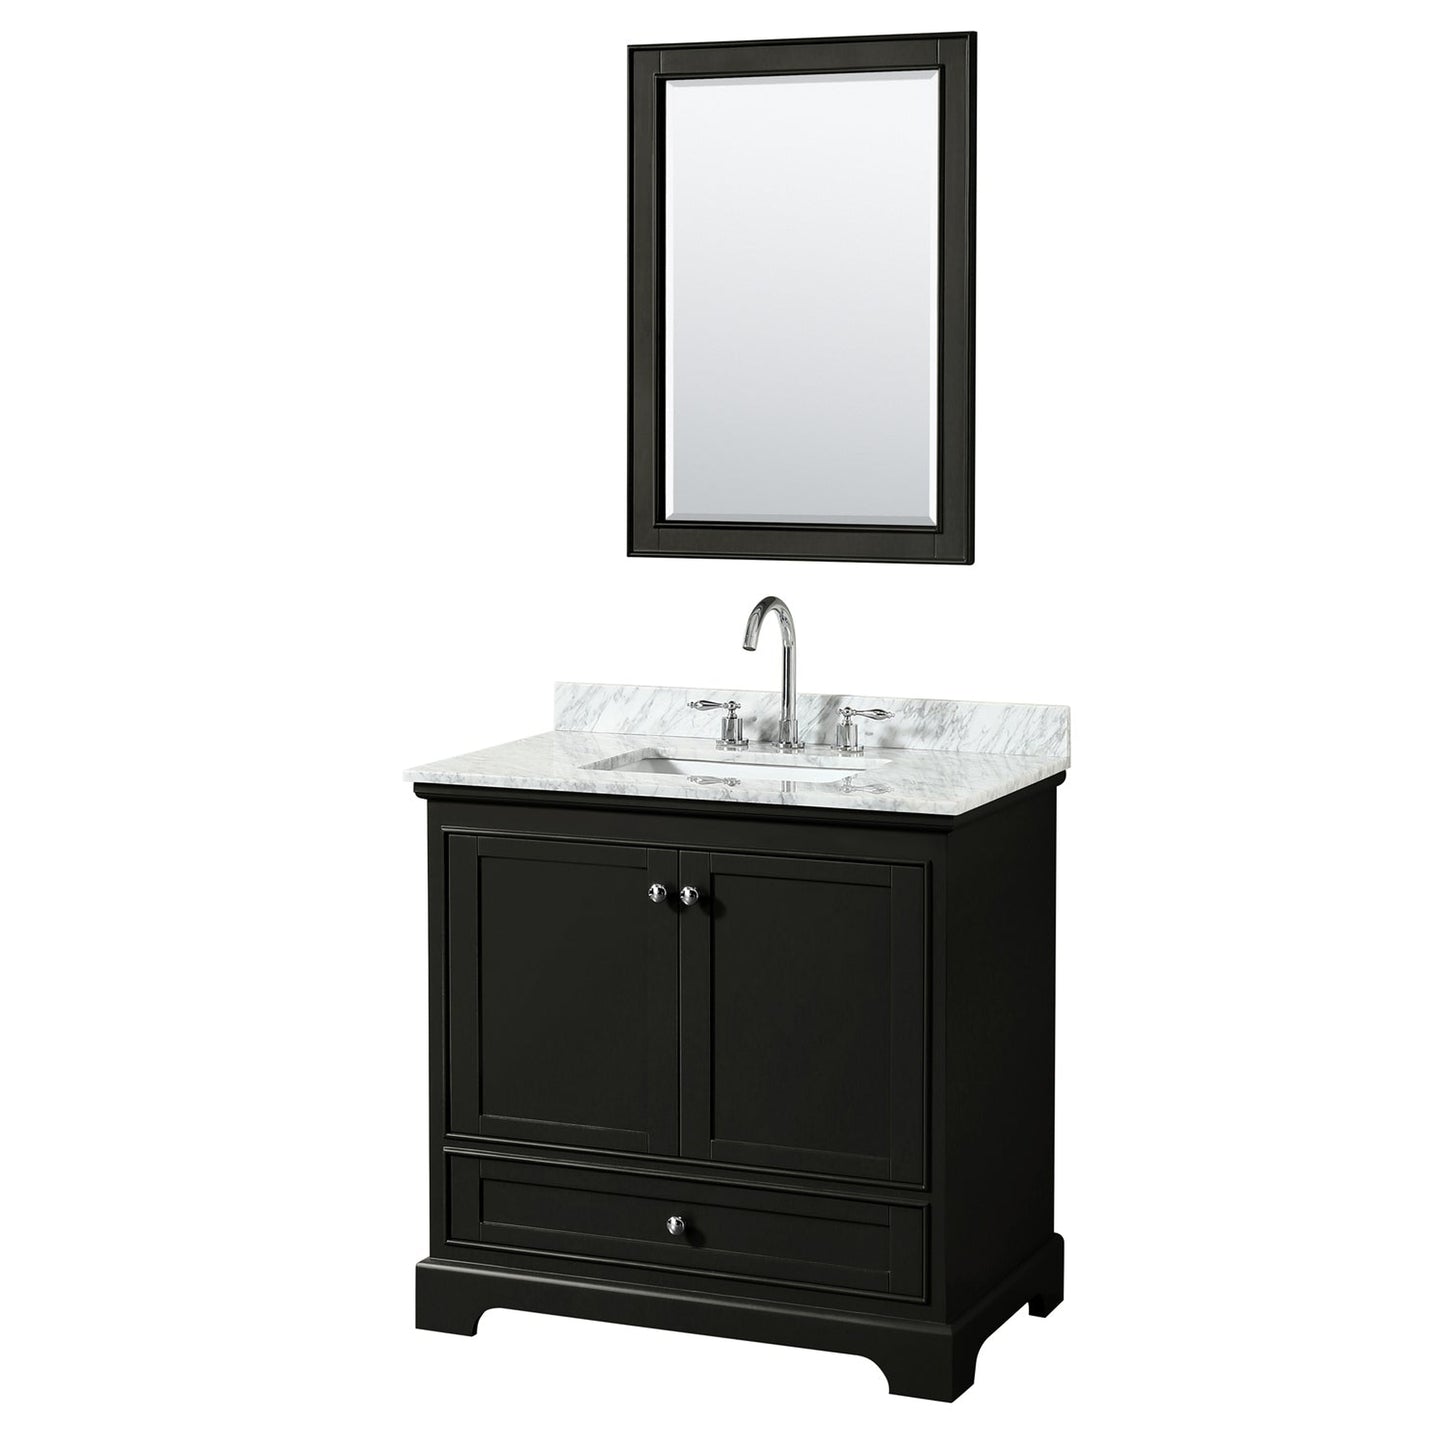 Wyndham Collection Deborah 36" Single Bathroom Vanity in Dark Espresso, White Carrara Marble Countertop, Undermount Square Sink, and 24" Mirror